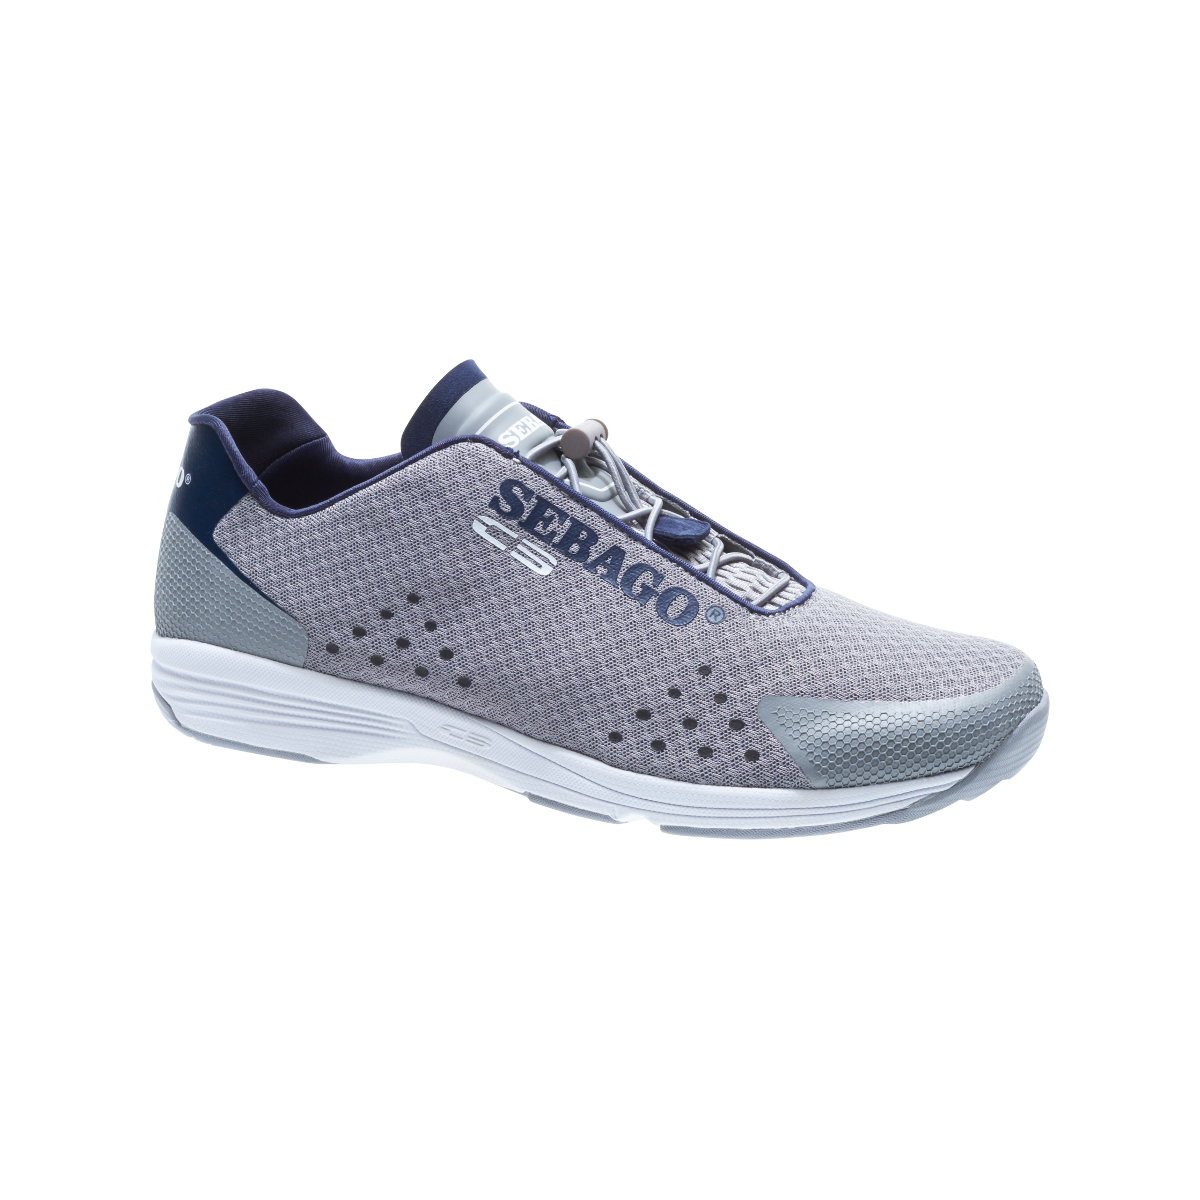 Sebago Cyphon Sea Sport chaussures à voile homme gris, taille EU 43